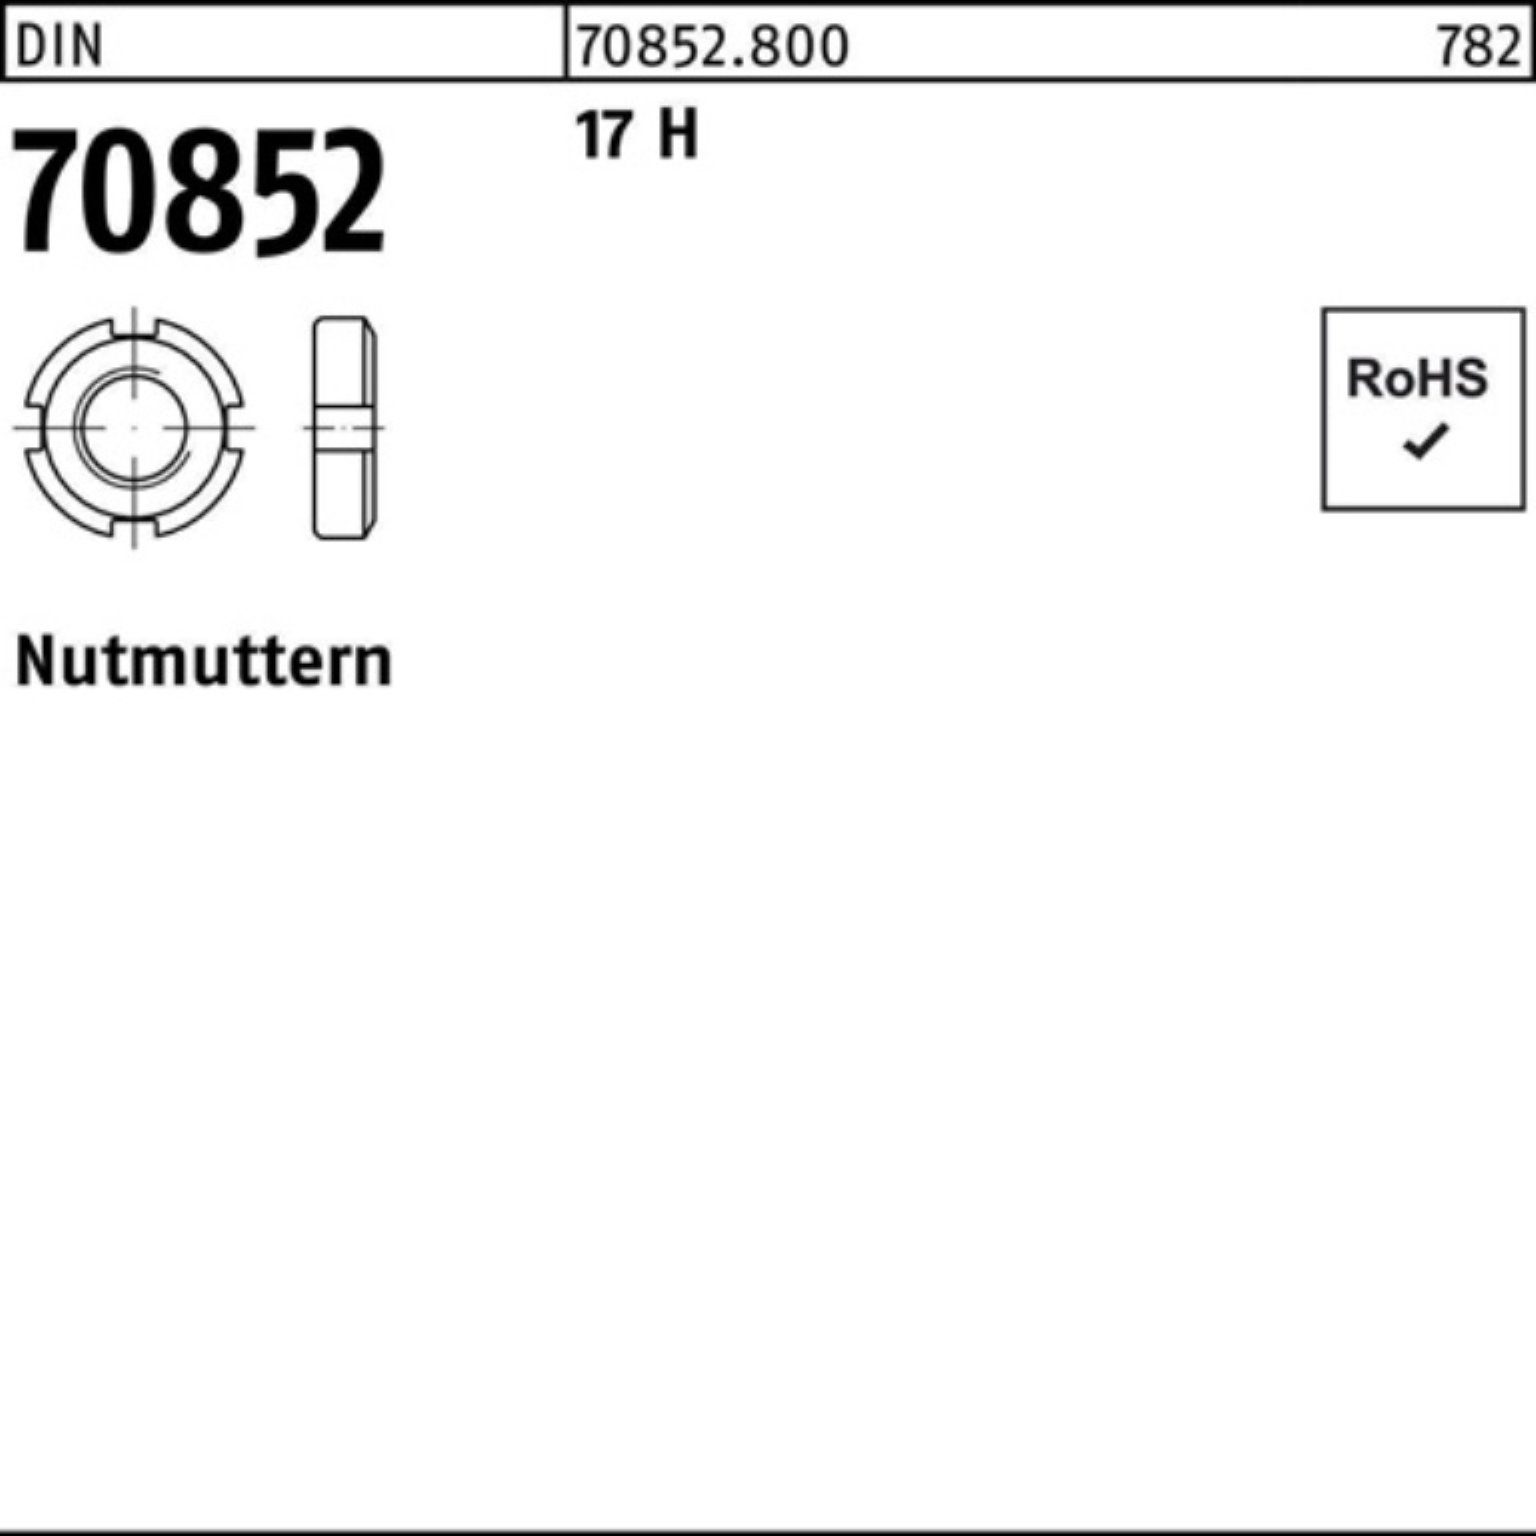 Reyher Nutmutter 100er Pack Nutmutter DIN 70852 M85x 1,5 17 H 1 Stück DIN 70852 17 H N